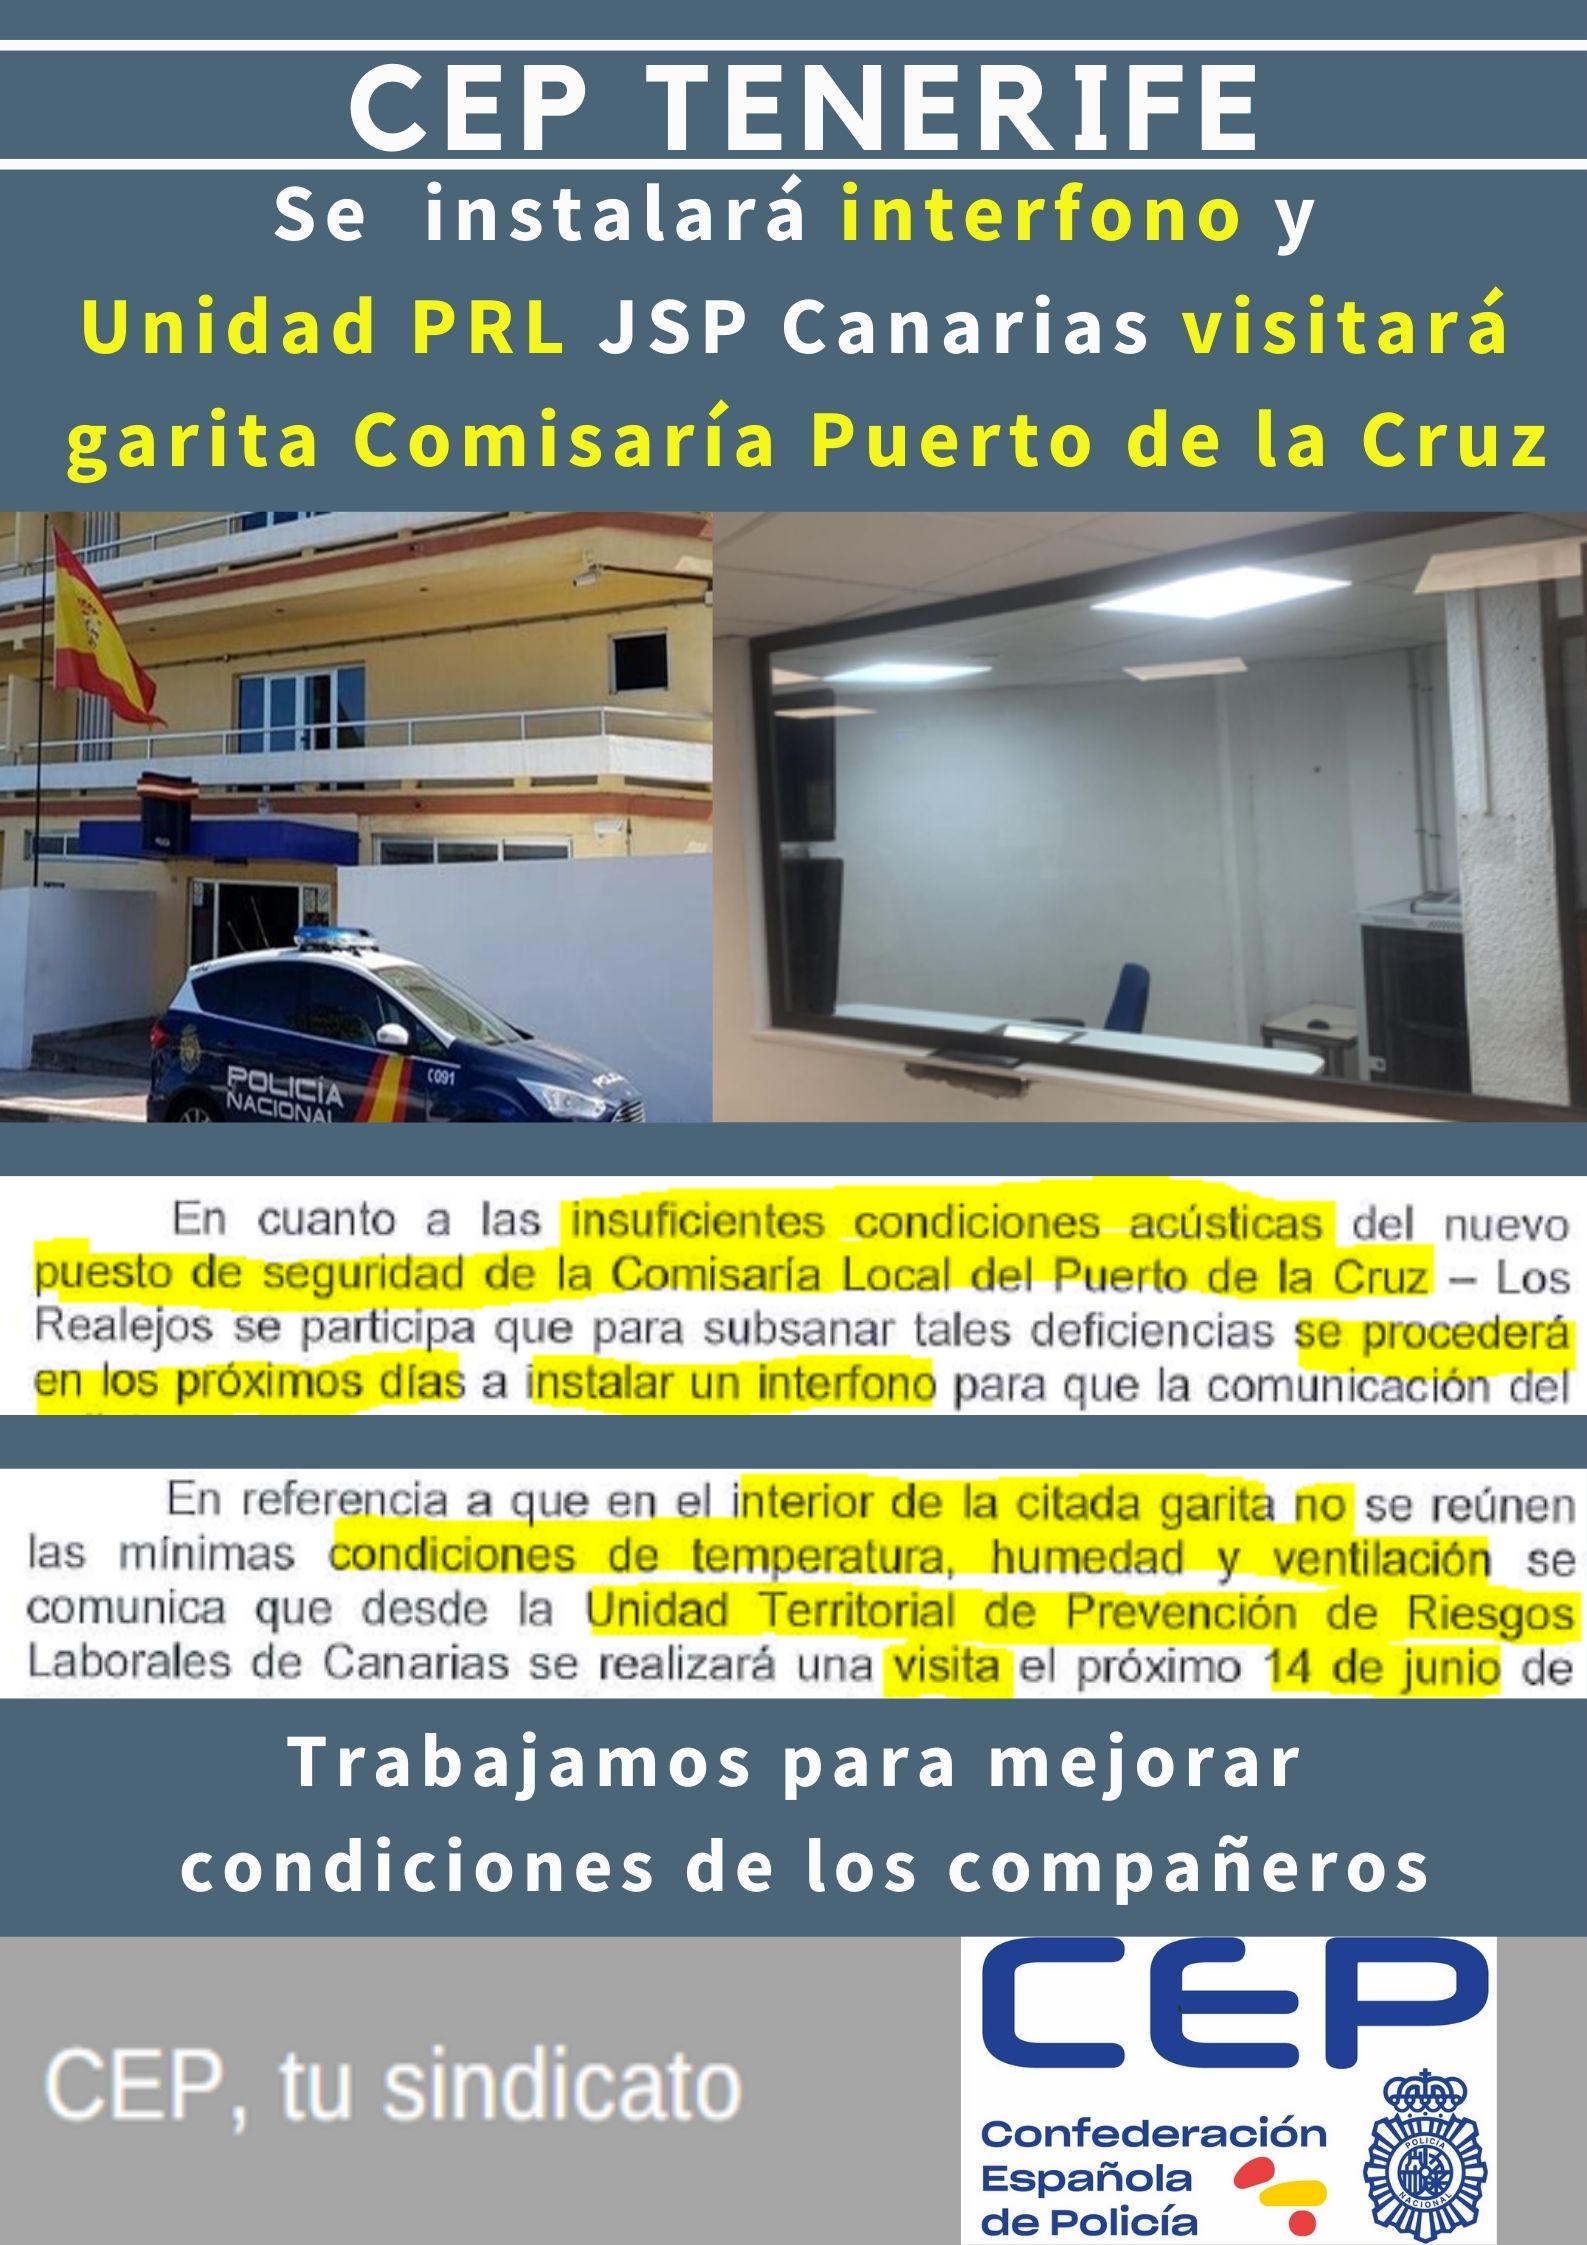 Se instalará interfono y unidad PRL visitará garita Puerto de la Cruz